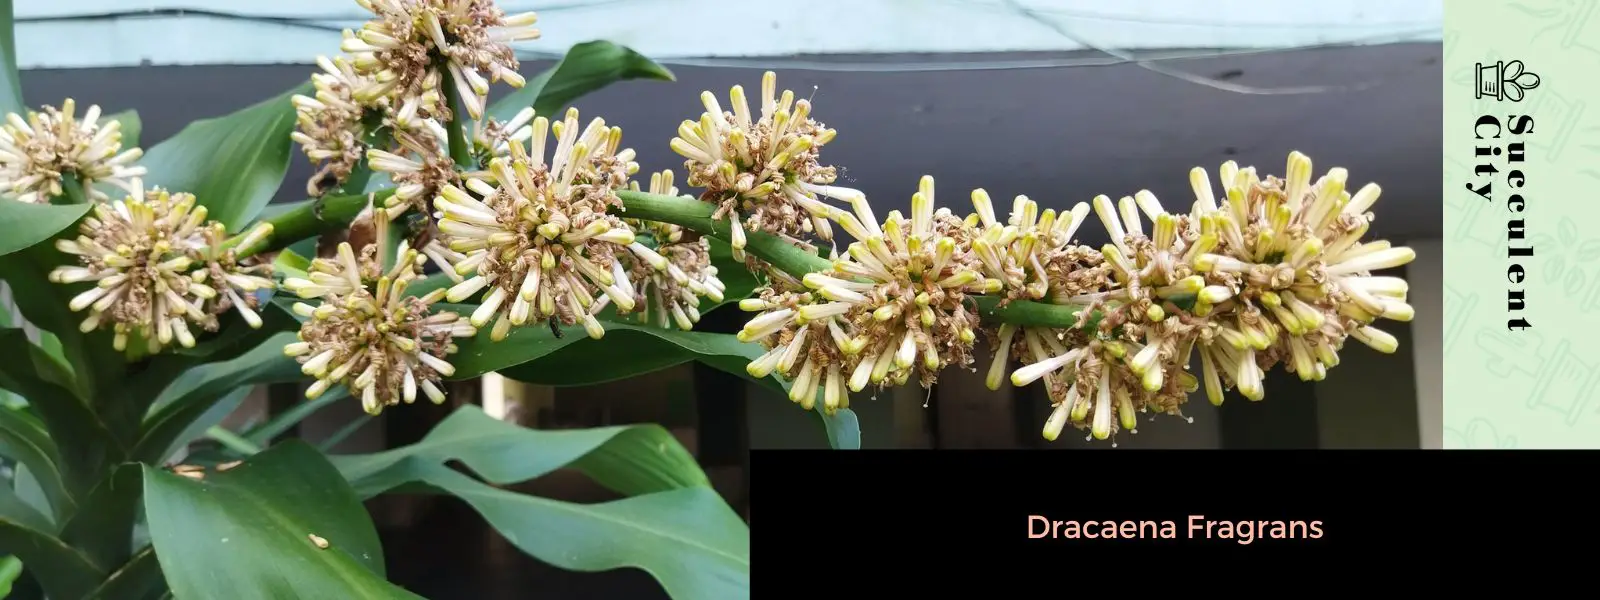 Dracaena Fragrans (La planta del maíz)